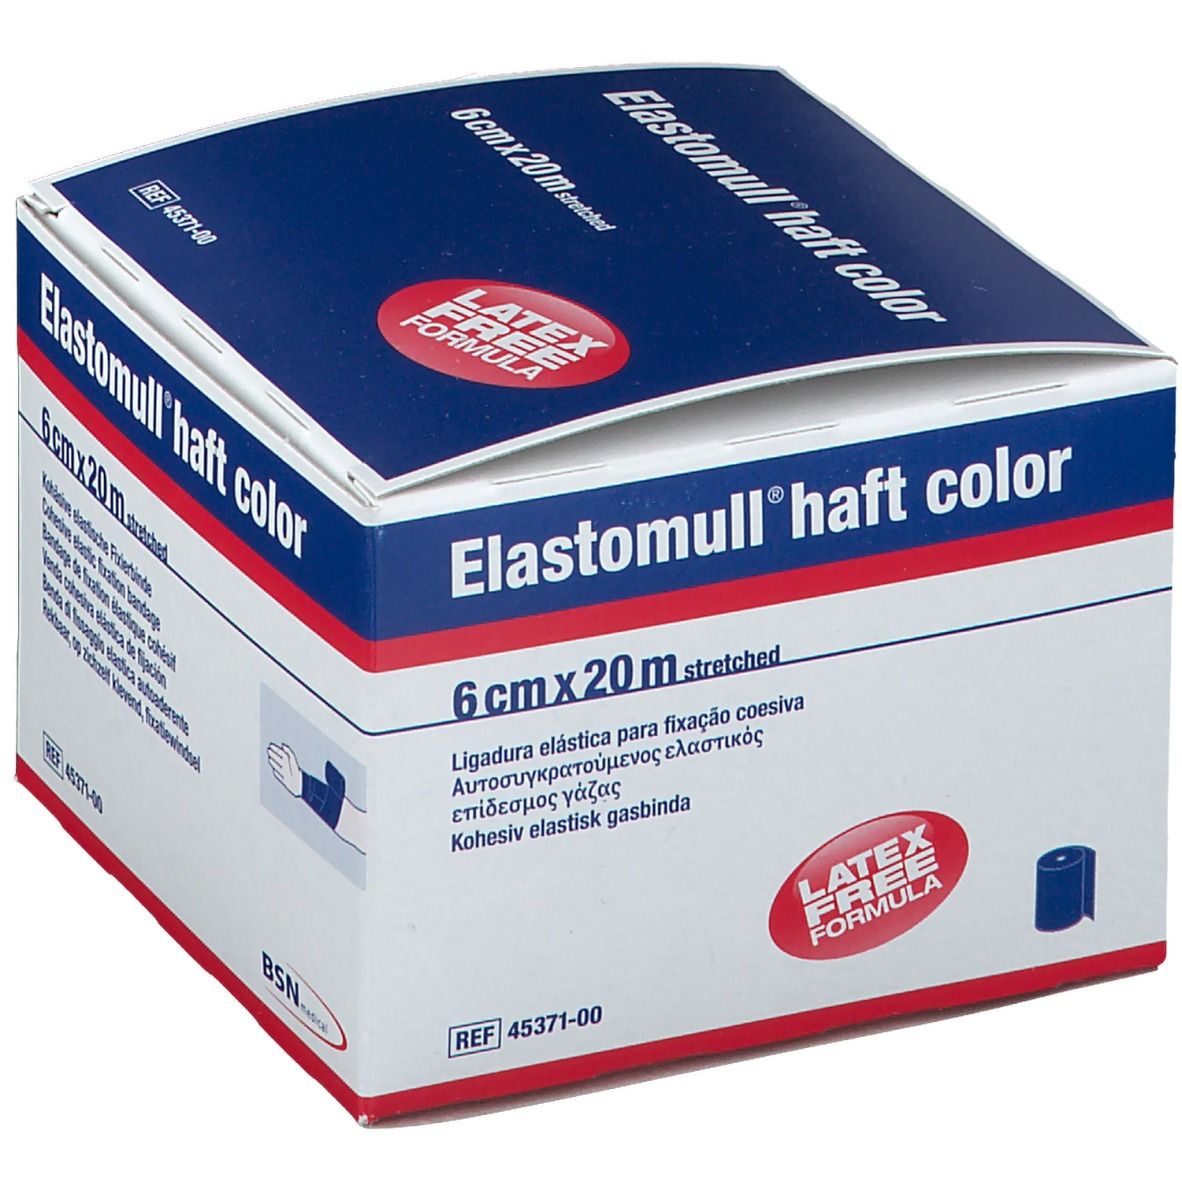 Elastomull® haft color 6 cm x 20 m blau